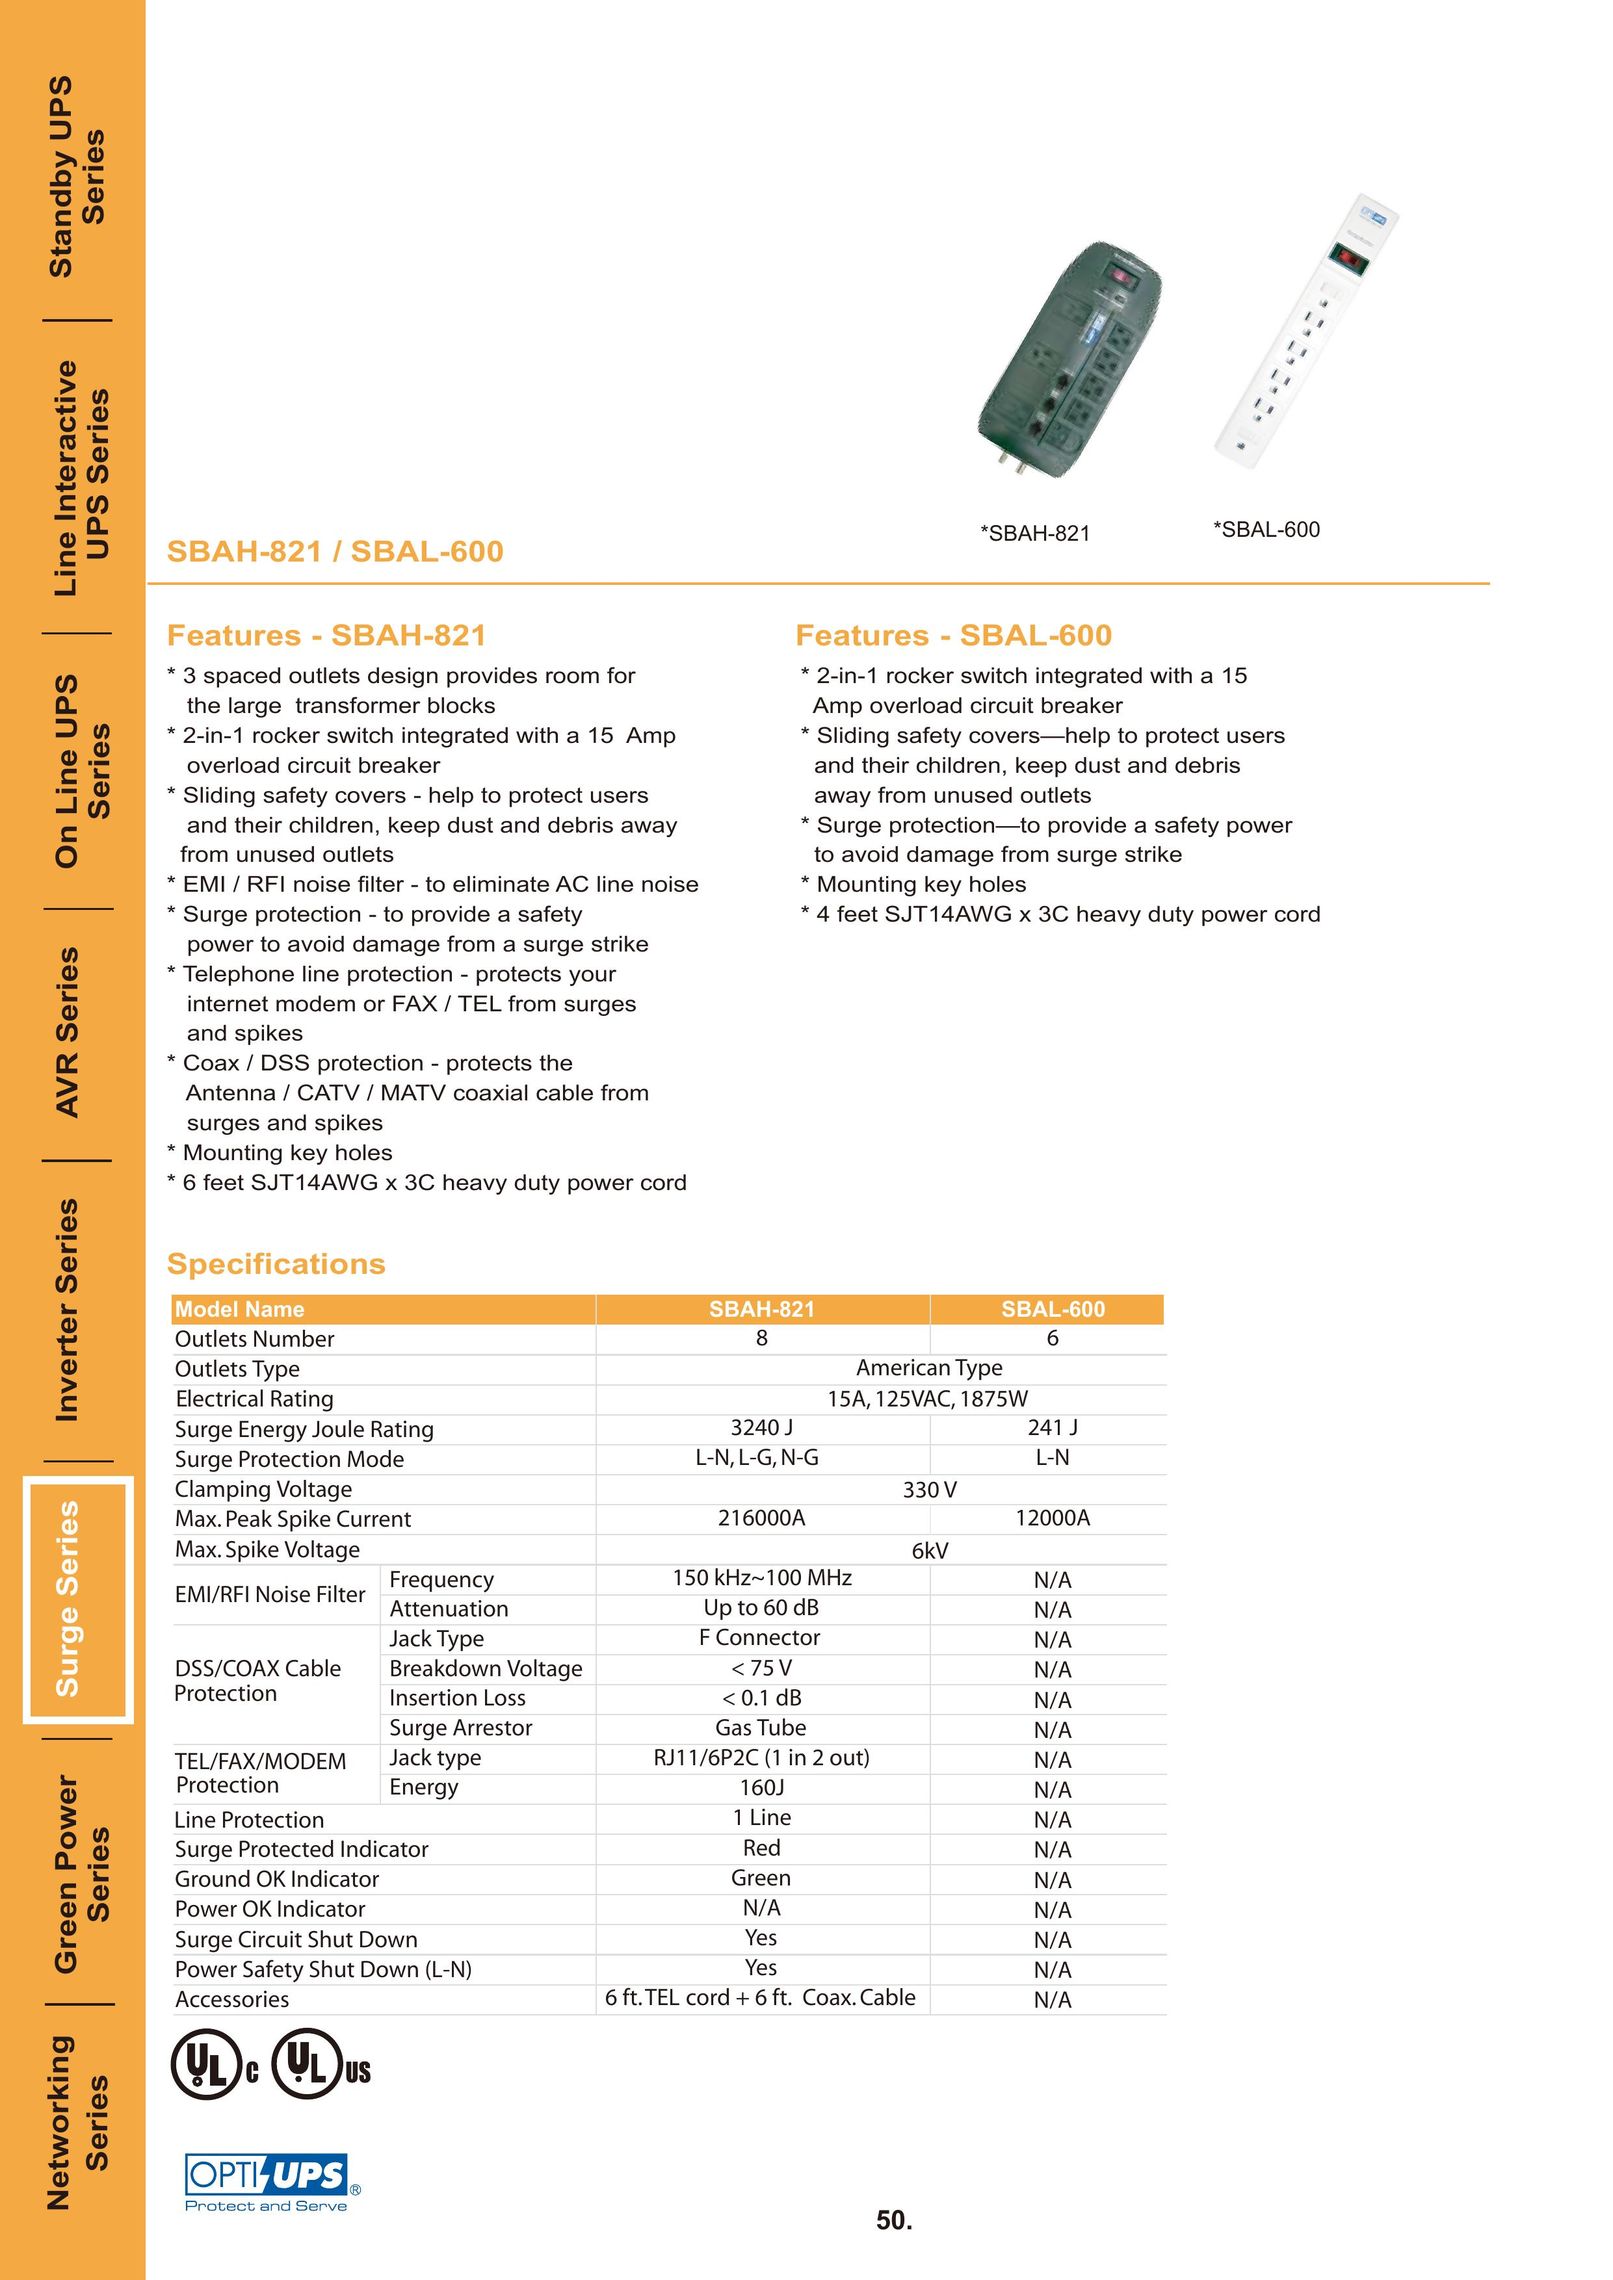 OPTI-UPS SBAH-821 Surge Protector User Manual